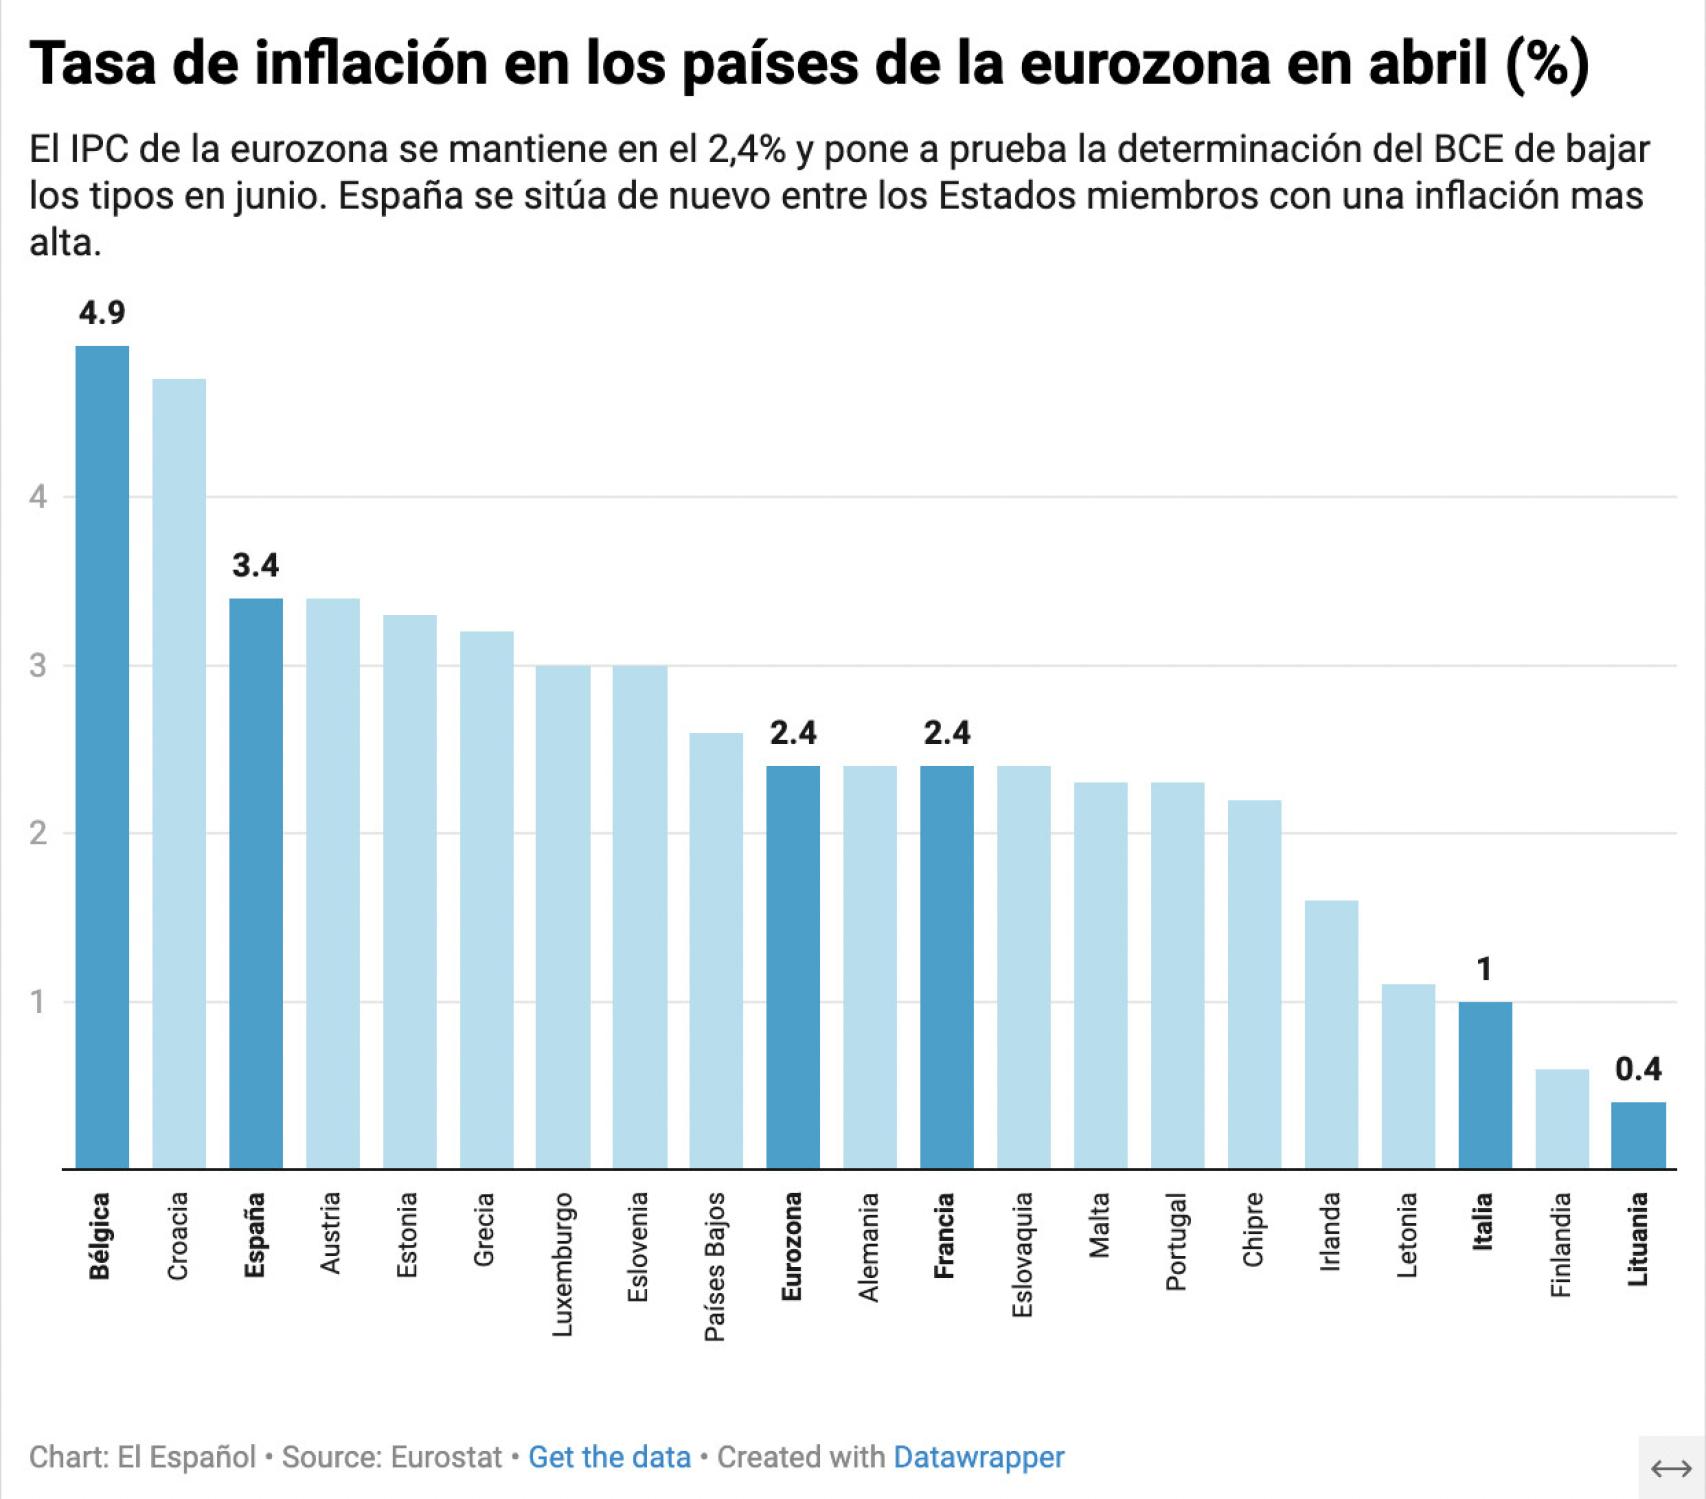 Tasa de inflación en los países de la eurozona en abril